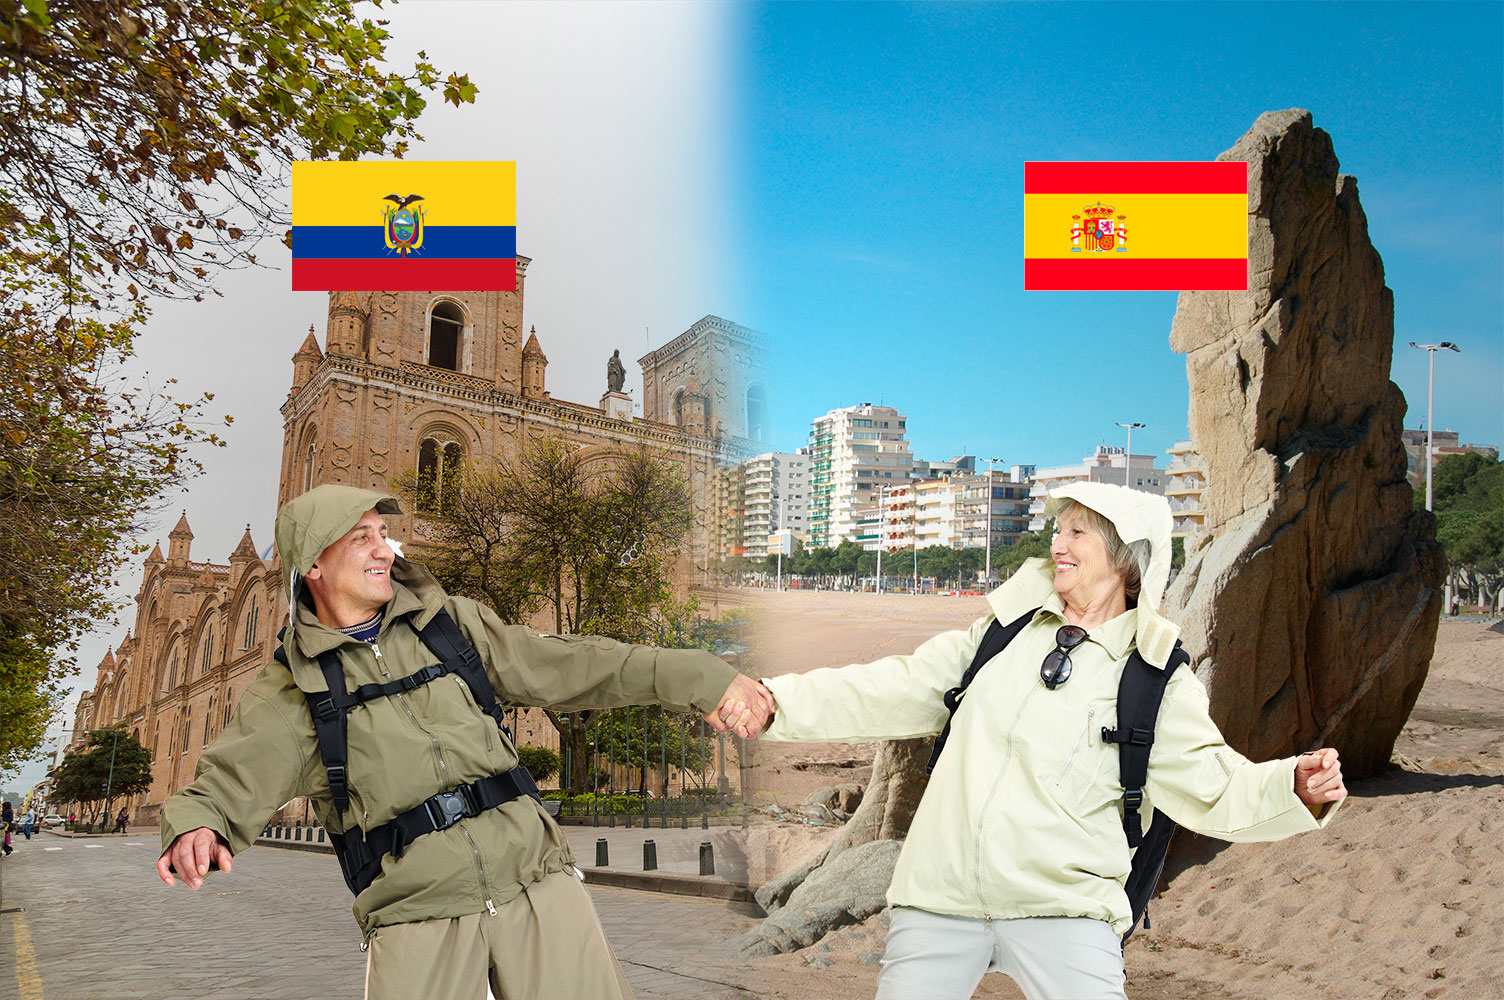 Hablamos te da la oportunidad de experimentar en España o Latinoamérica la “Convivencia con el Españ